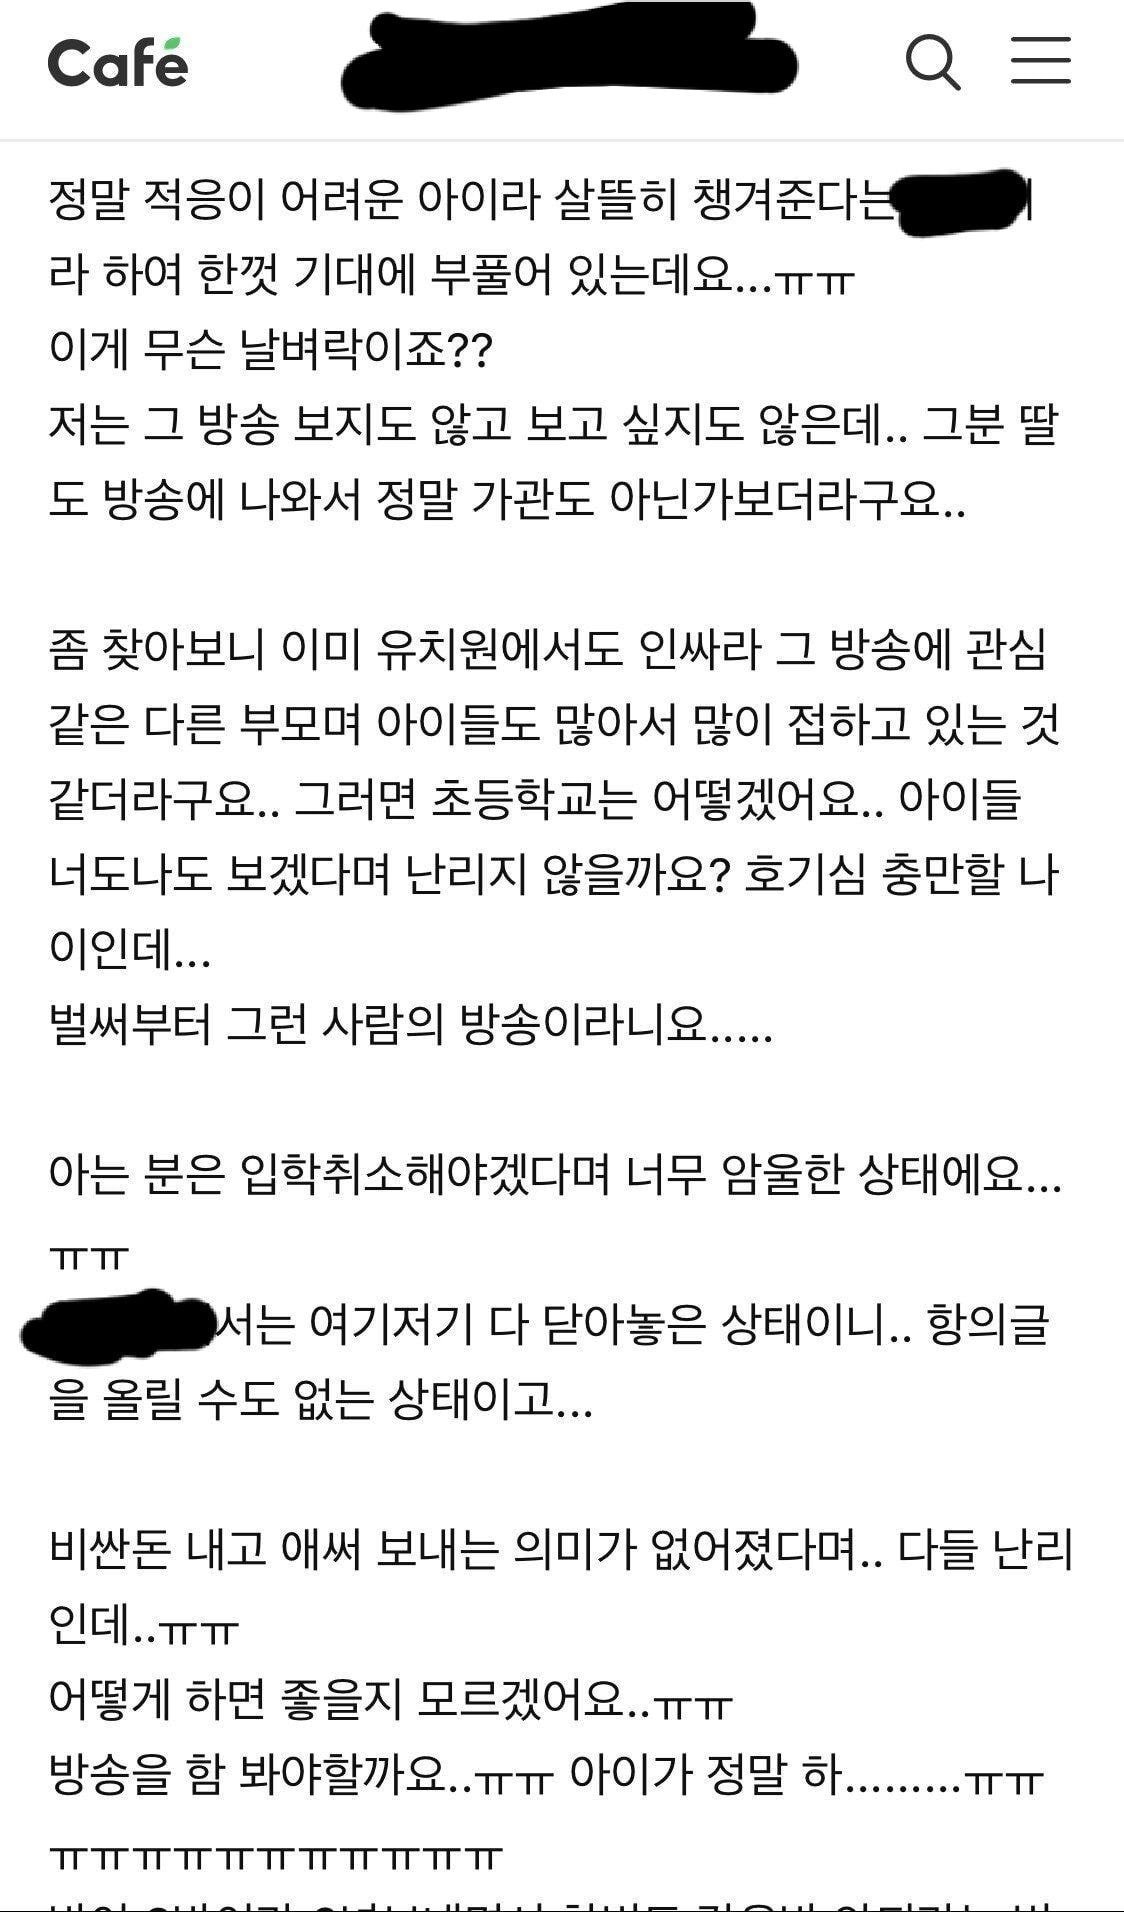 철구 딸 입학하는 인천 사립학교 입학취소 고민하는 학부모들